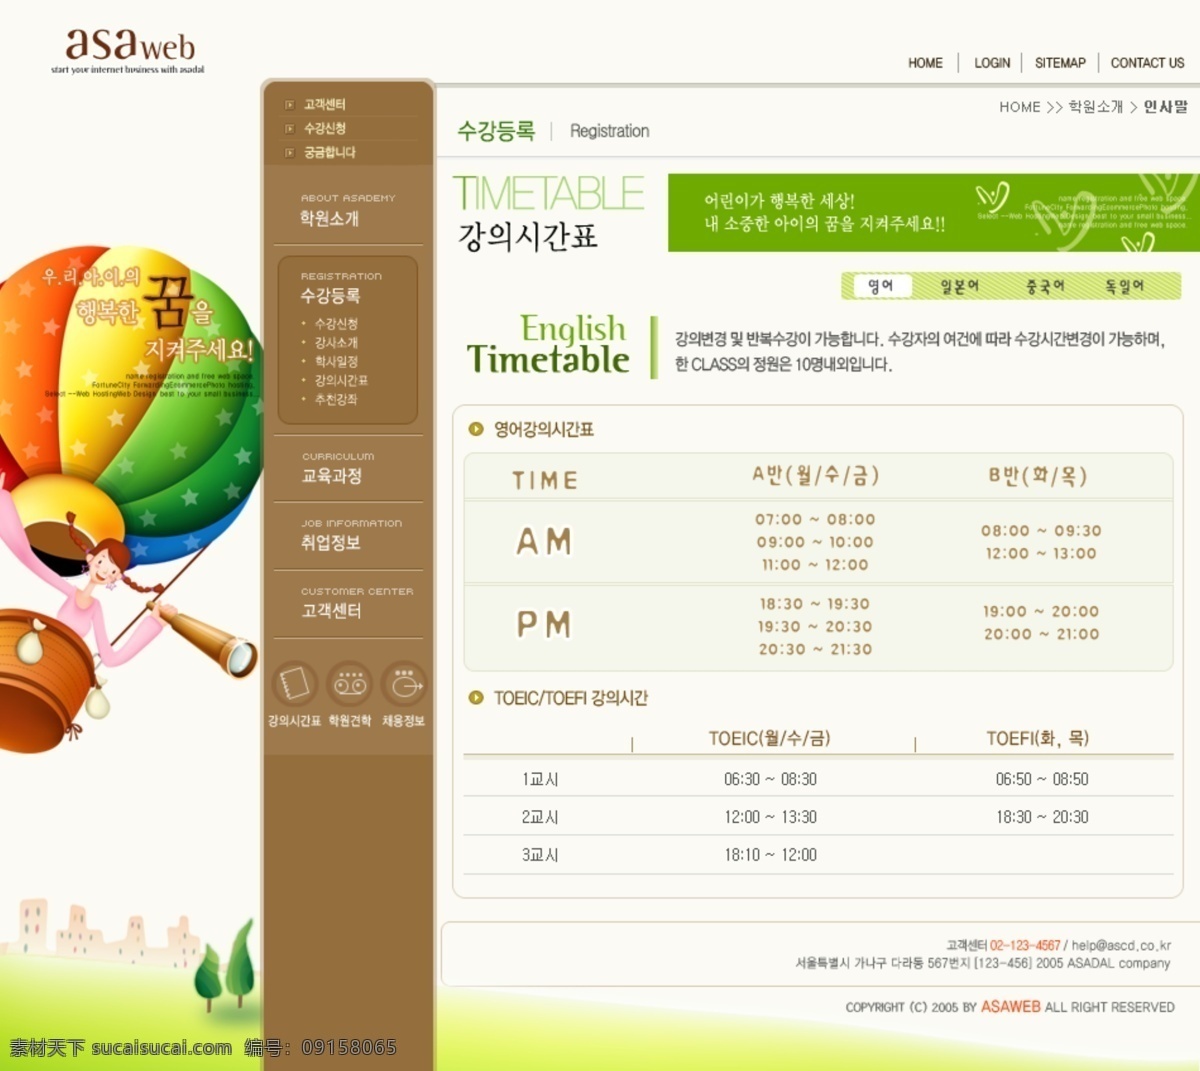 韩国旅游 网页 模版 旅游 绿色 清新 土黄 网页素材 网页模板